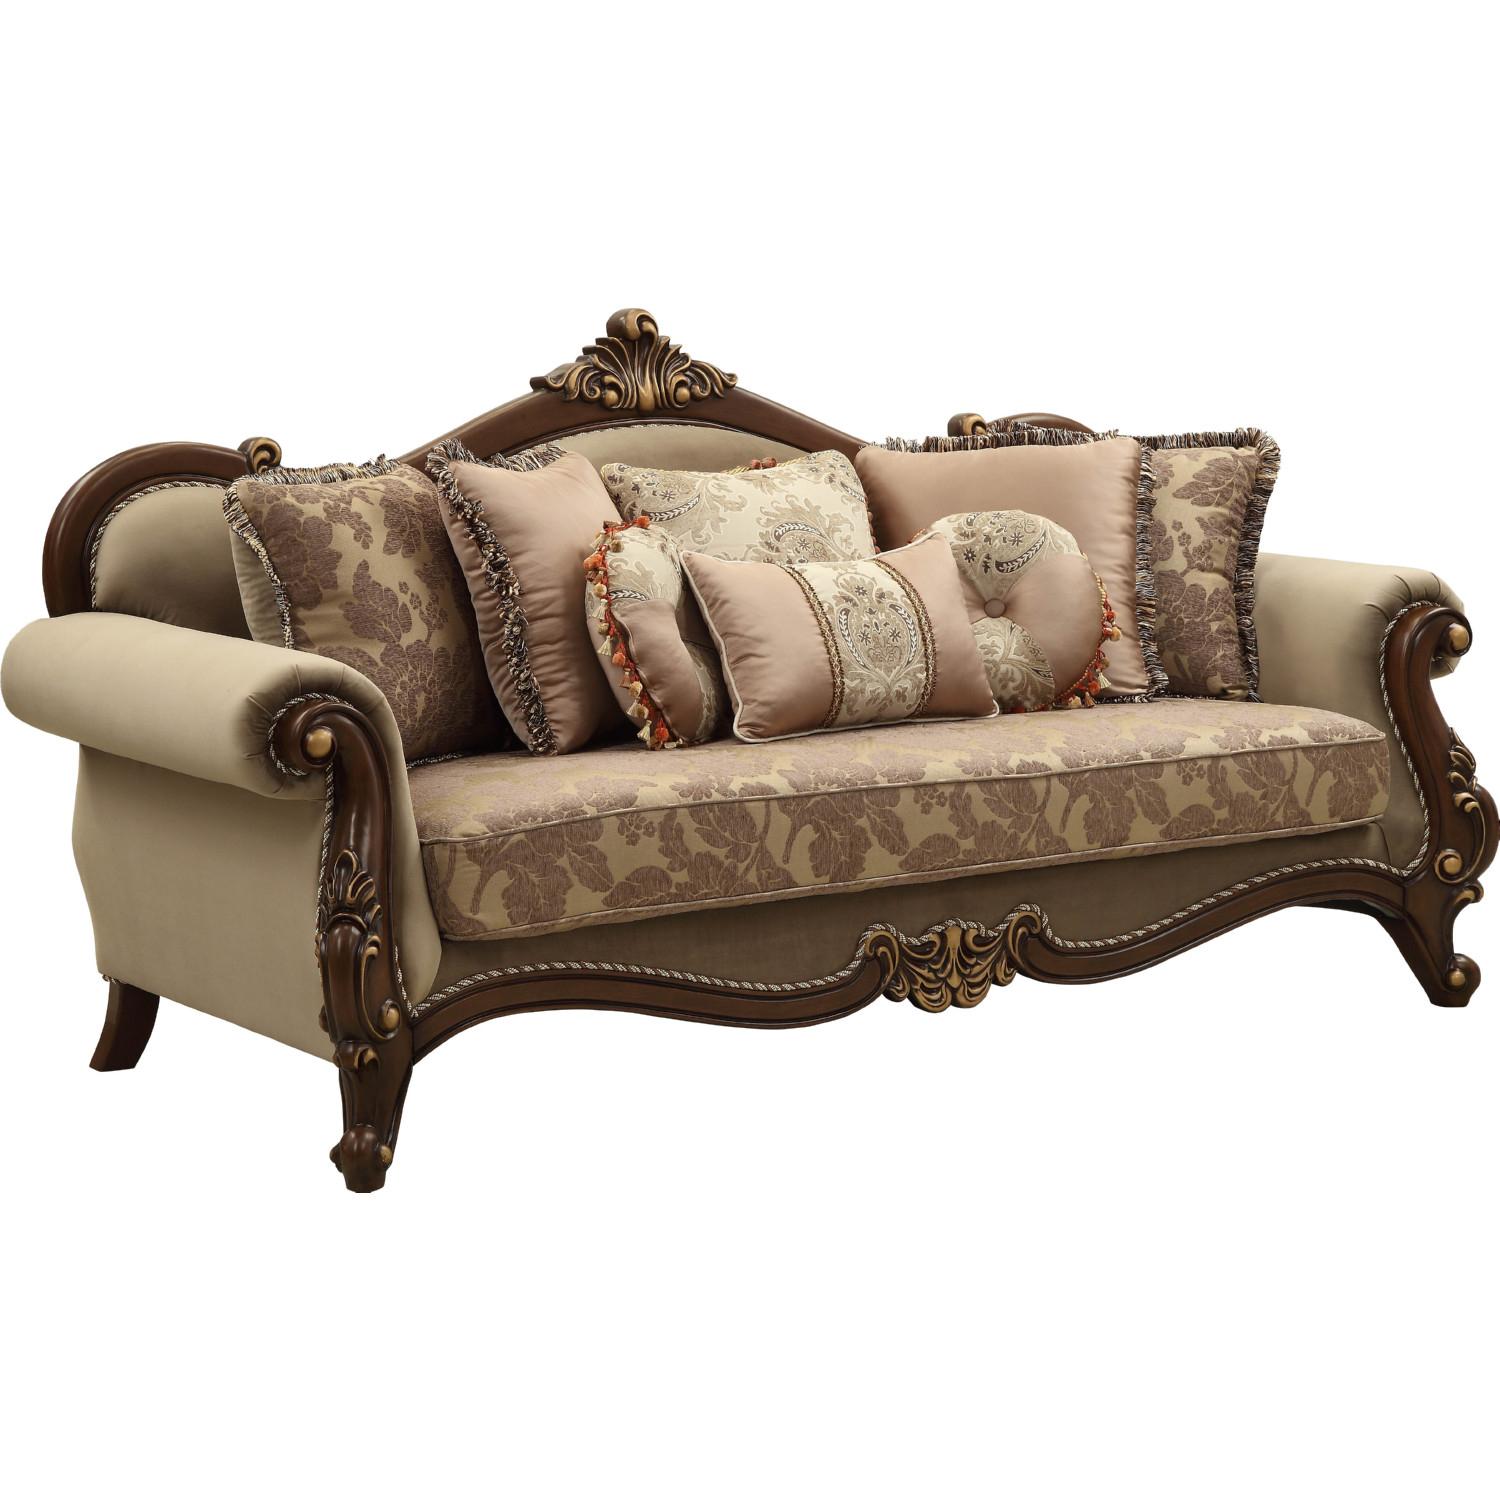 Classic, Traditional Sofa Mehadi 50690 50690-Mehadi in Walnut, Tan, Beige Fabric